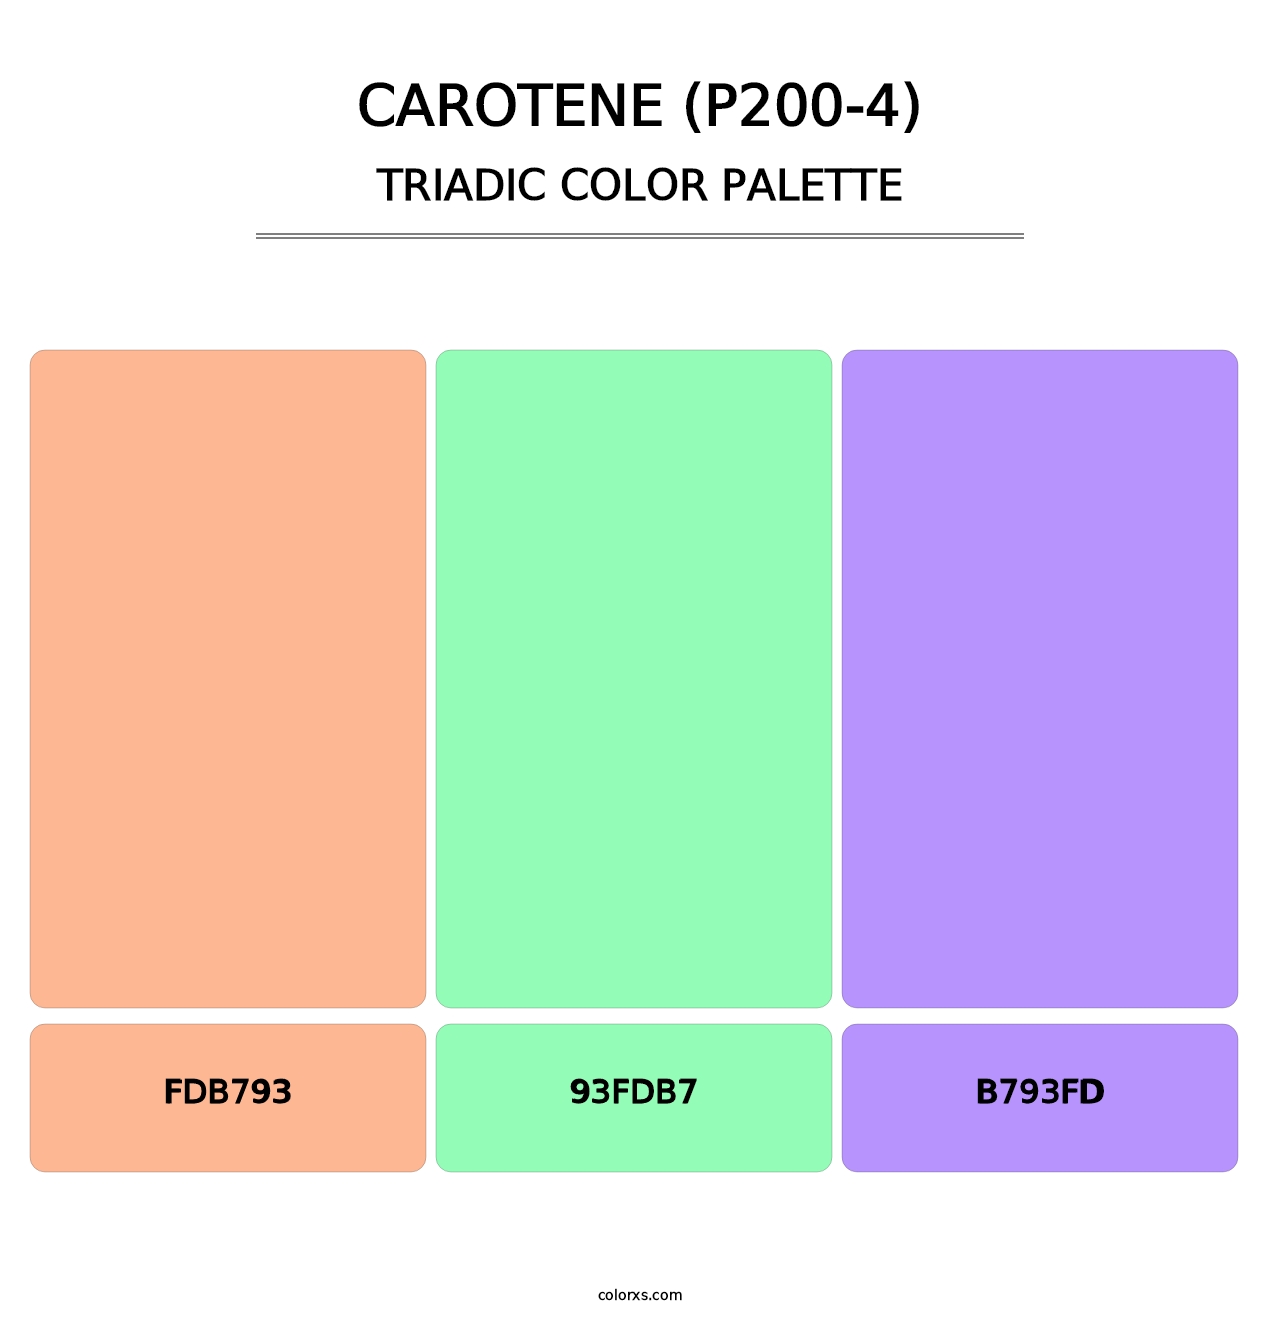 Carotene (P200-4) - Triadic Color Palette